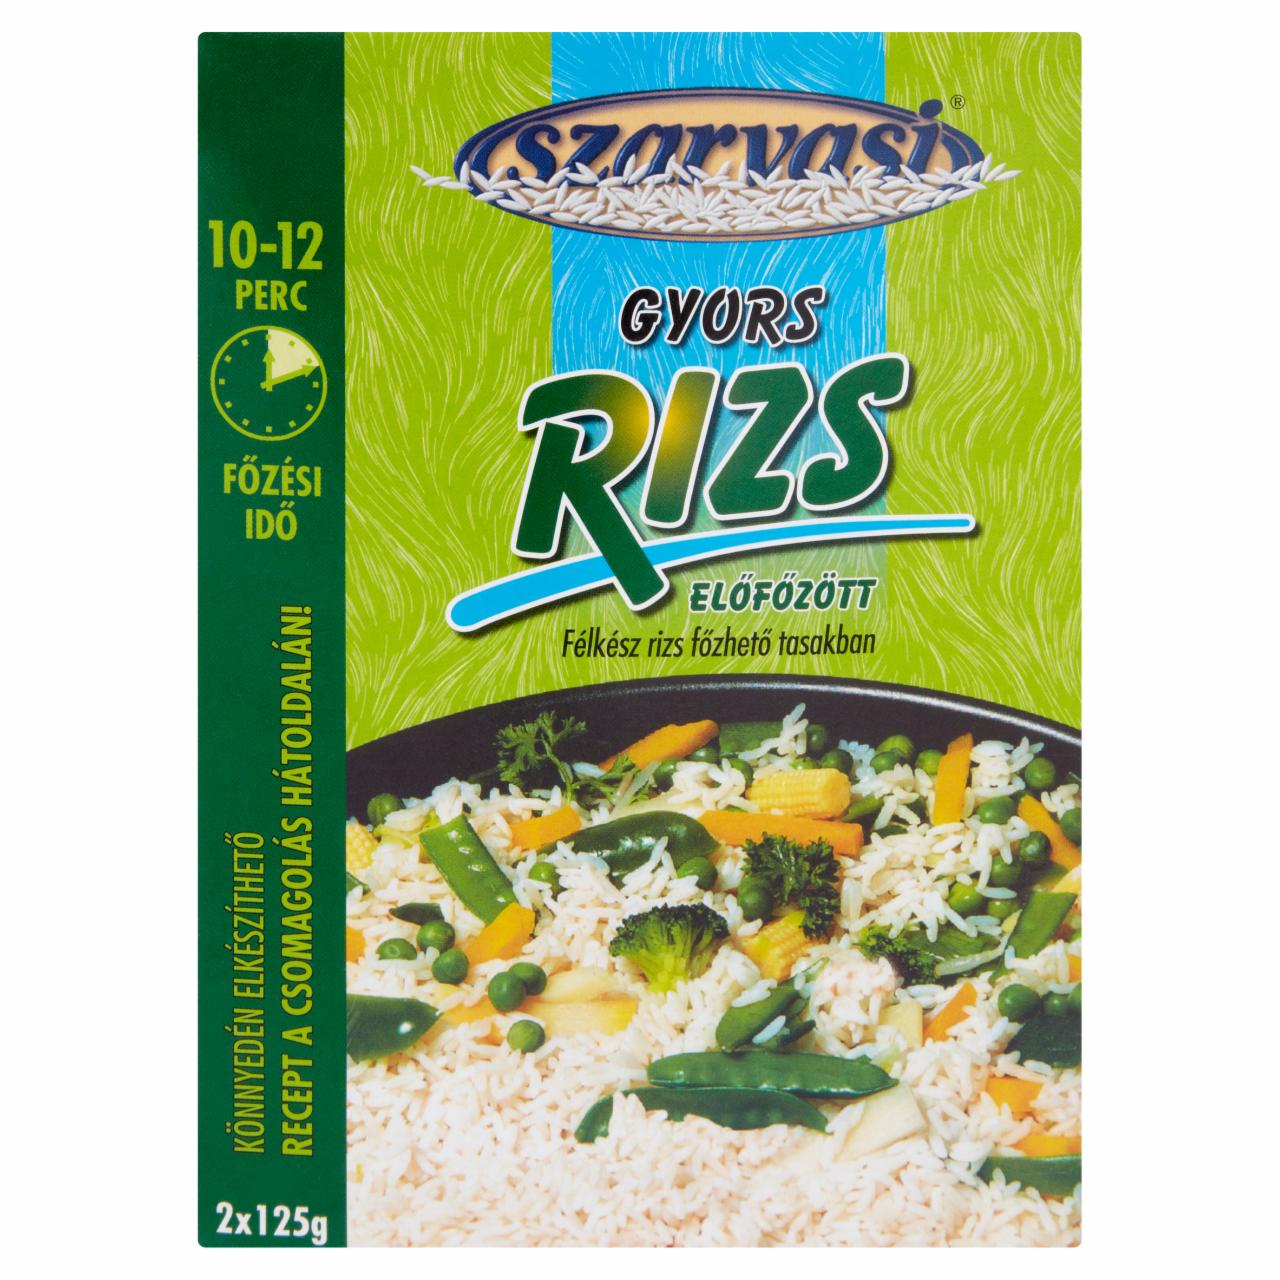 Képek - Szarvasi előfőzött félkész gyors rizs főzhető tasakban 2 x 125 g